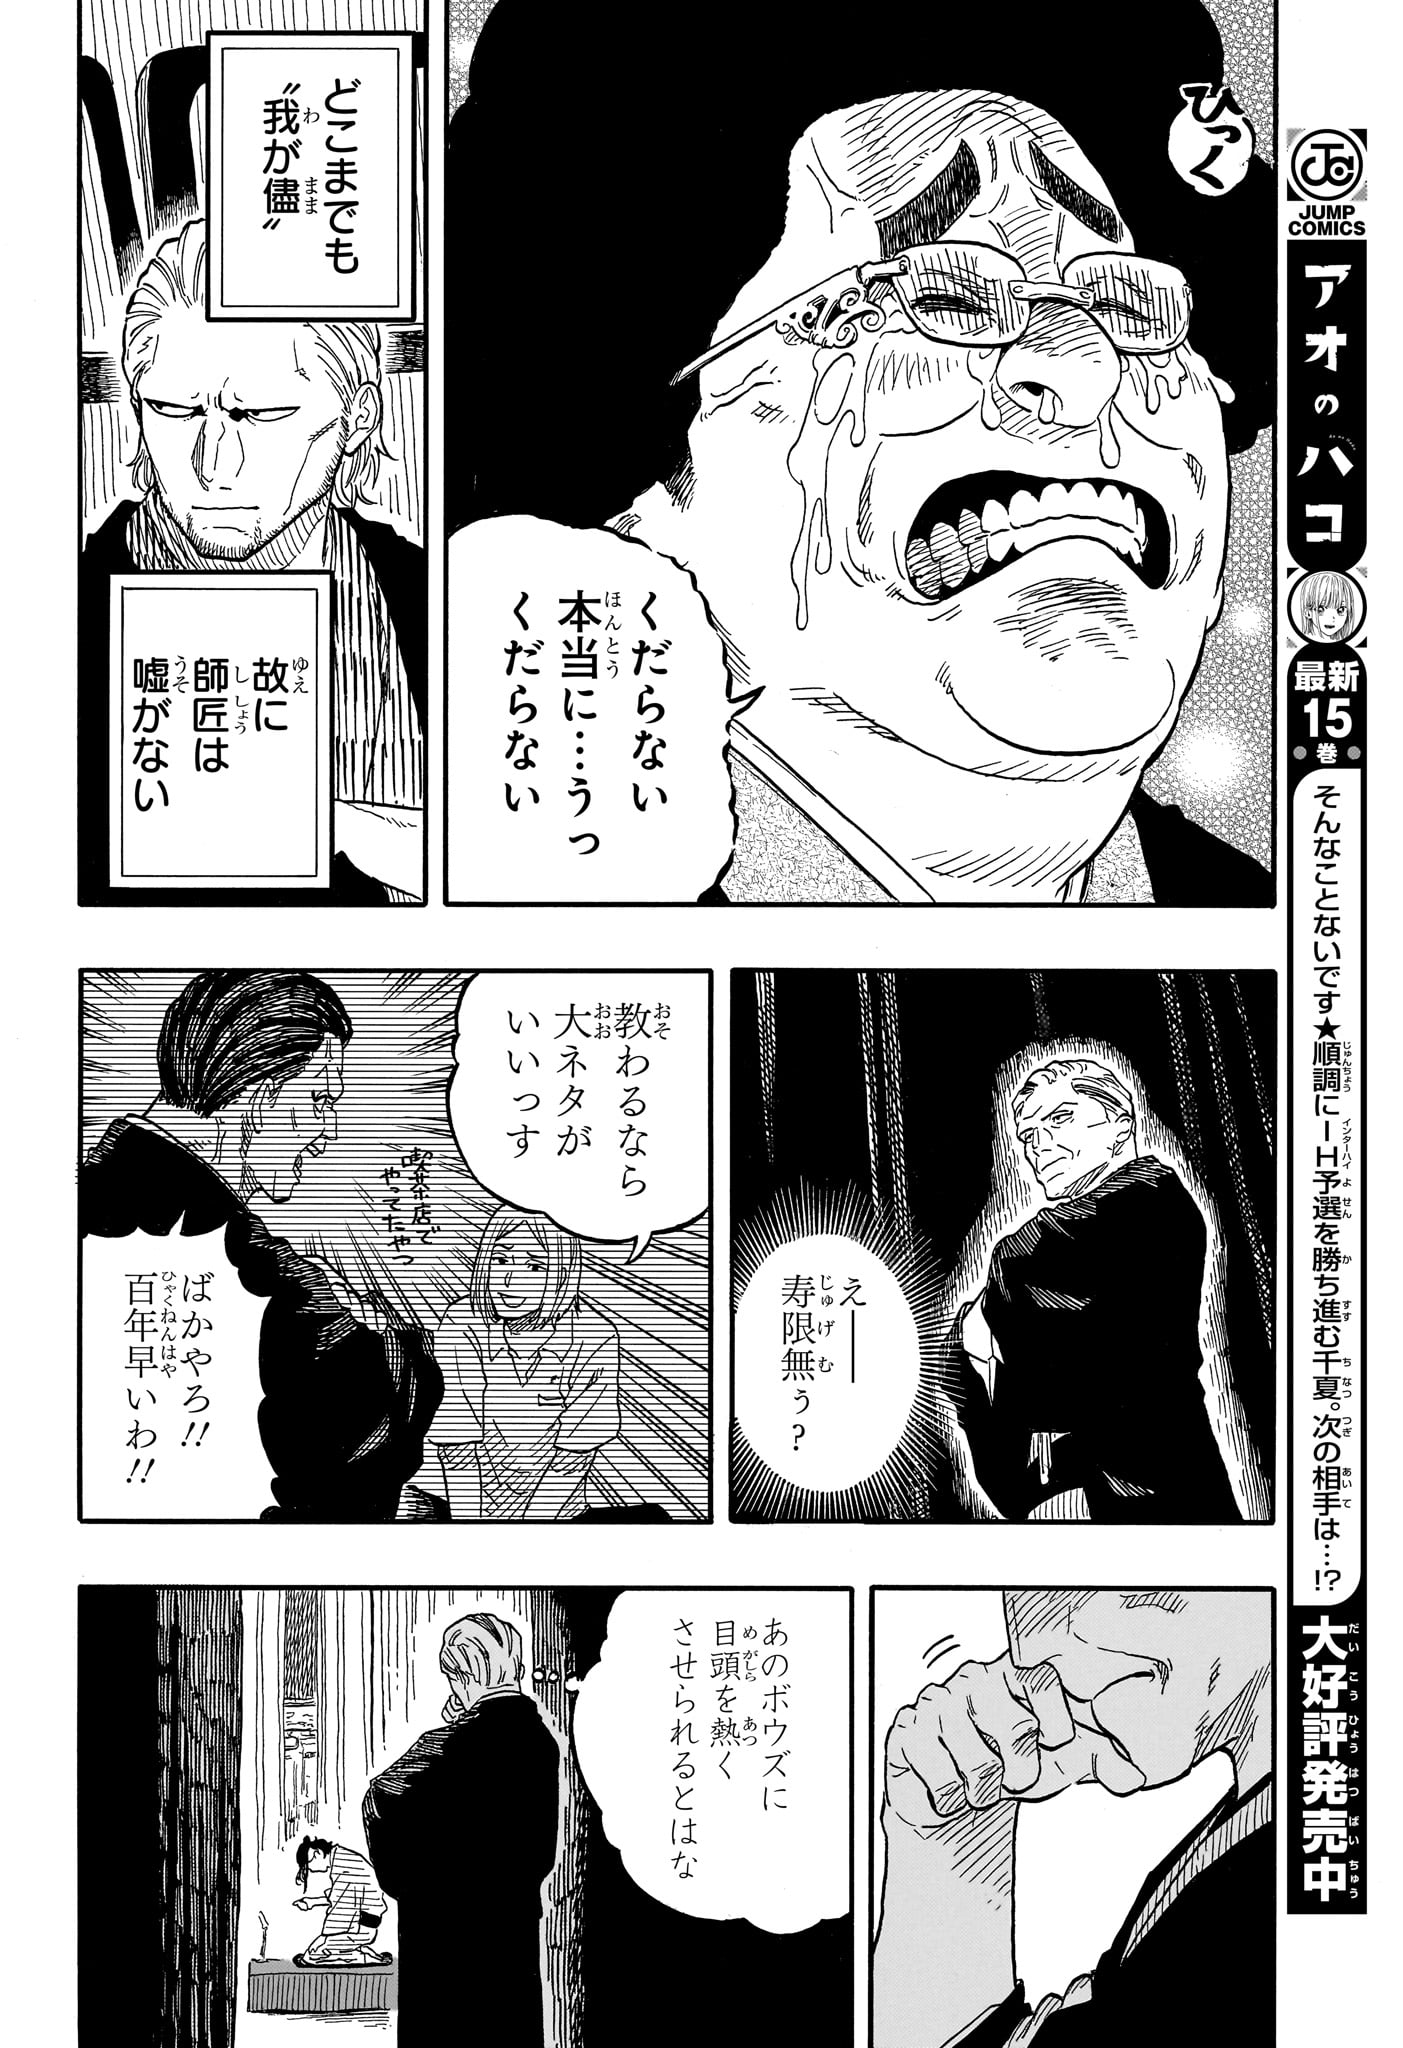 Akane-Banashi - Chapter 115 - Page 12